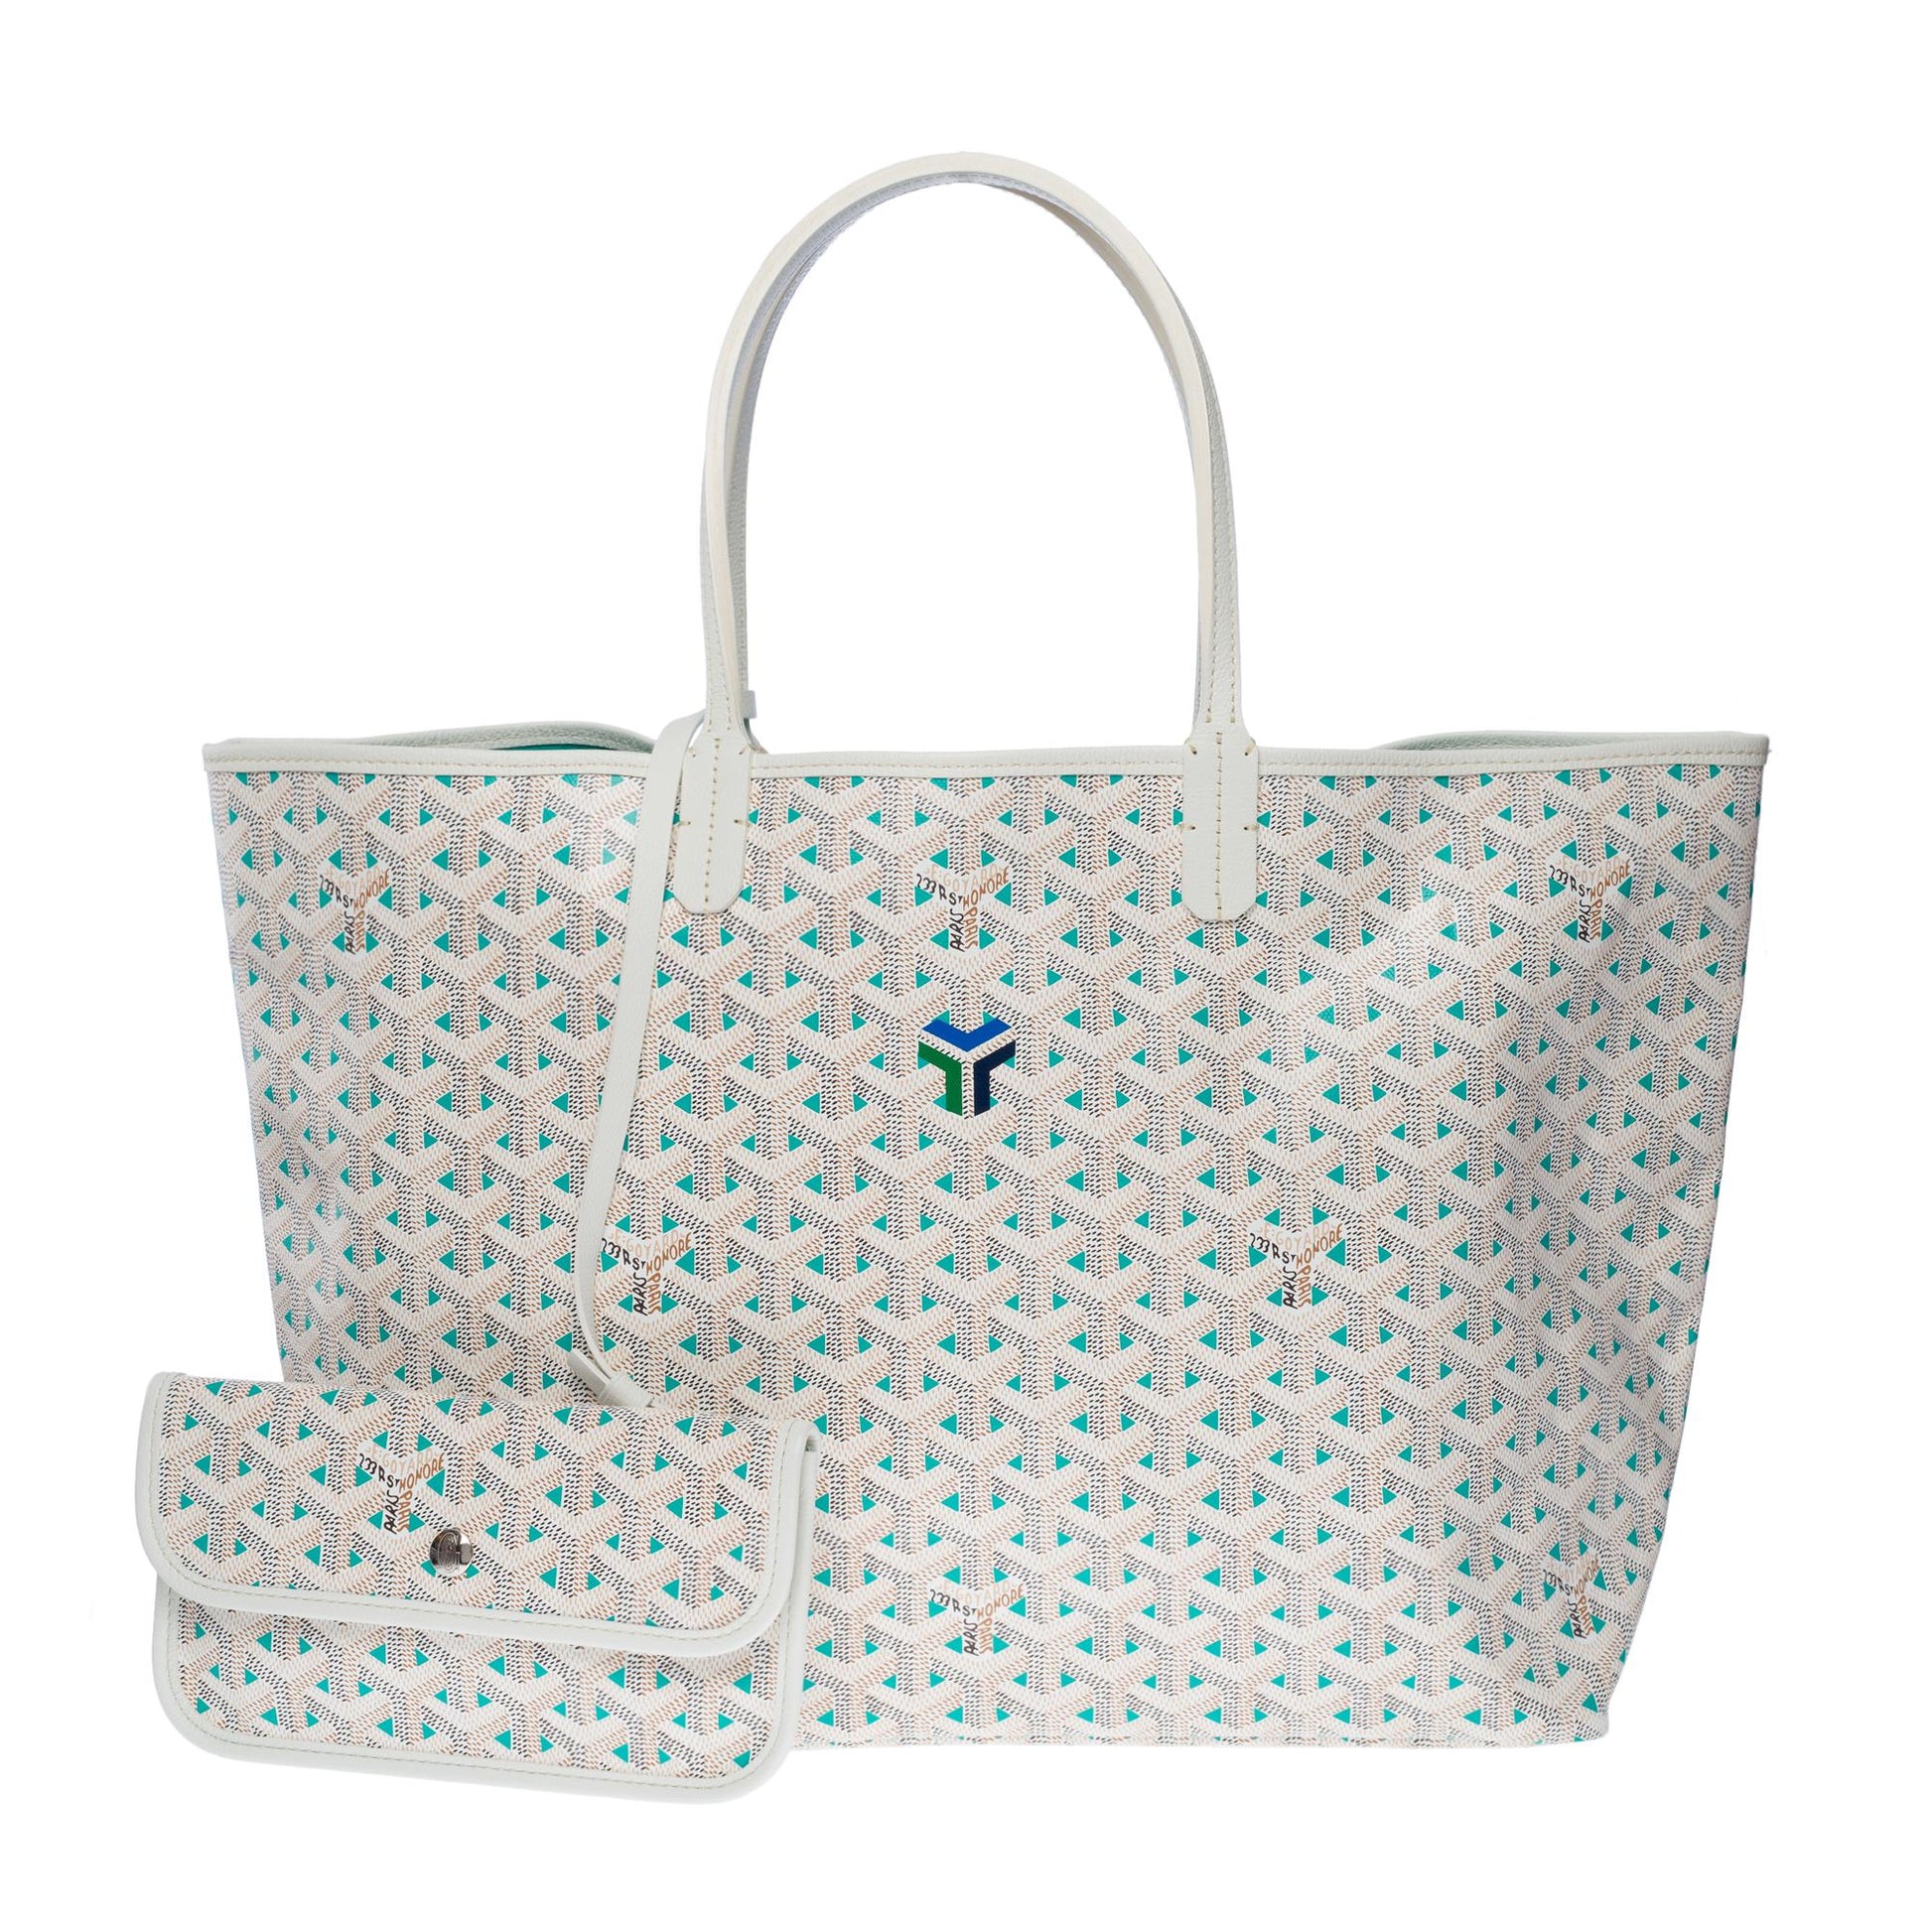 NWT Goyard Saint Louis Limited Edition Claire-Voie PM bag in Grege